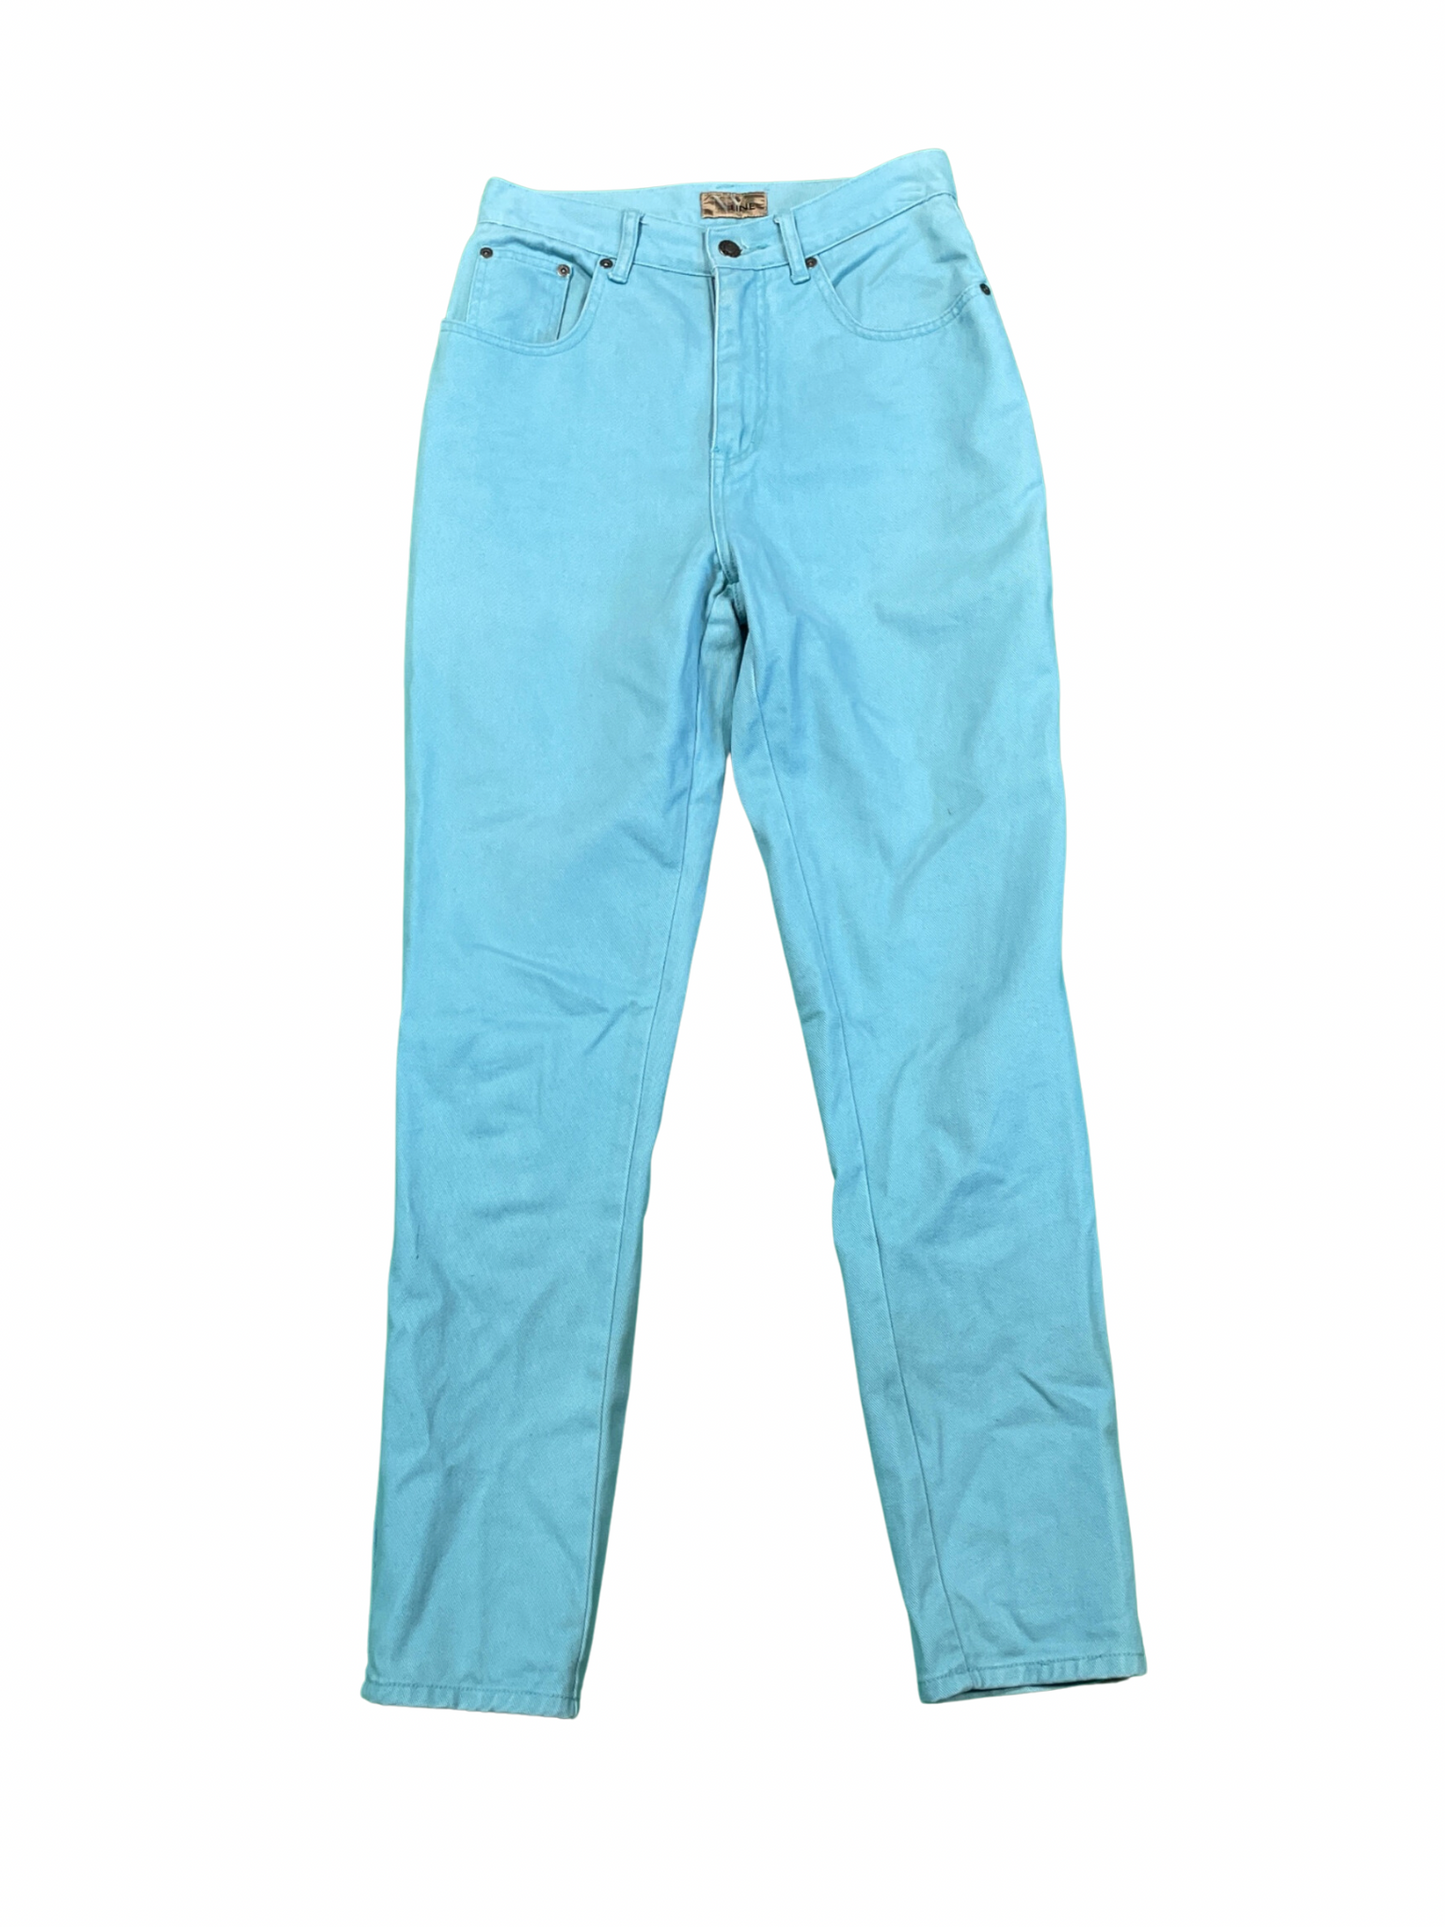 Vintage Teal Blue Denim Mom Jeans